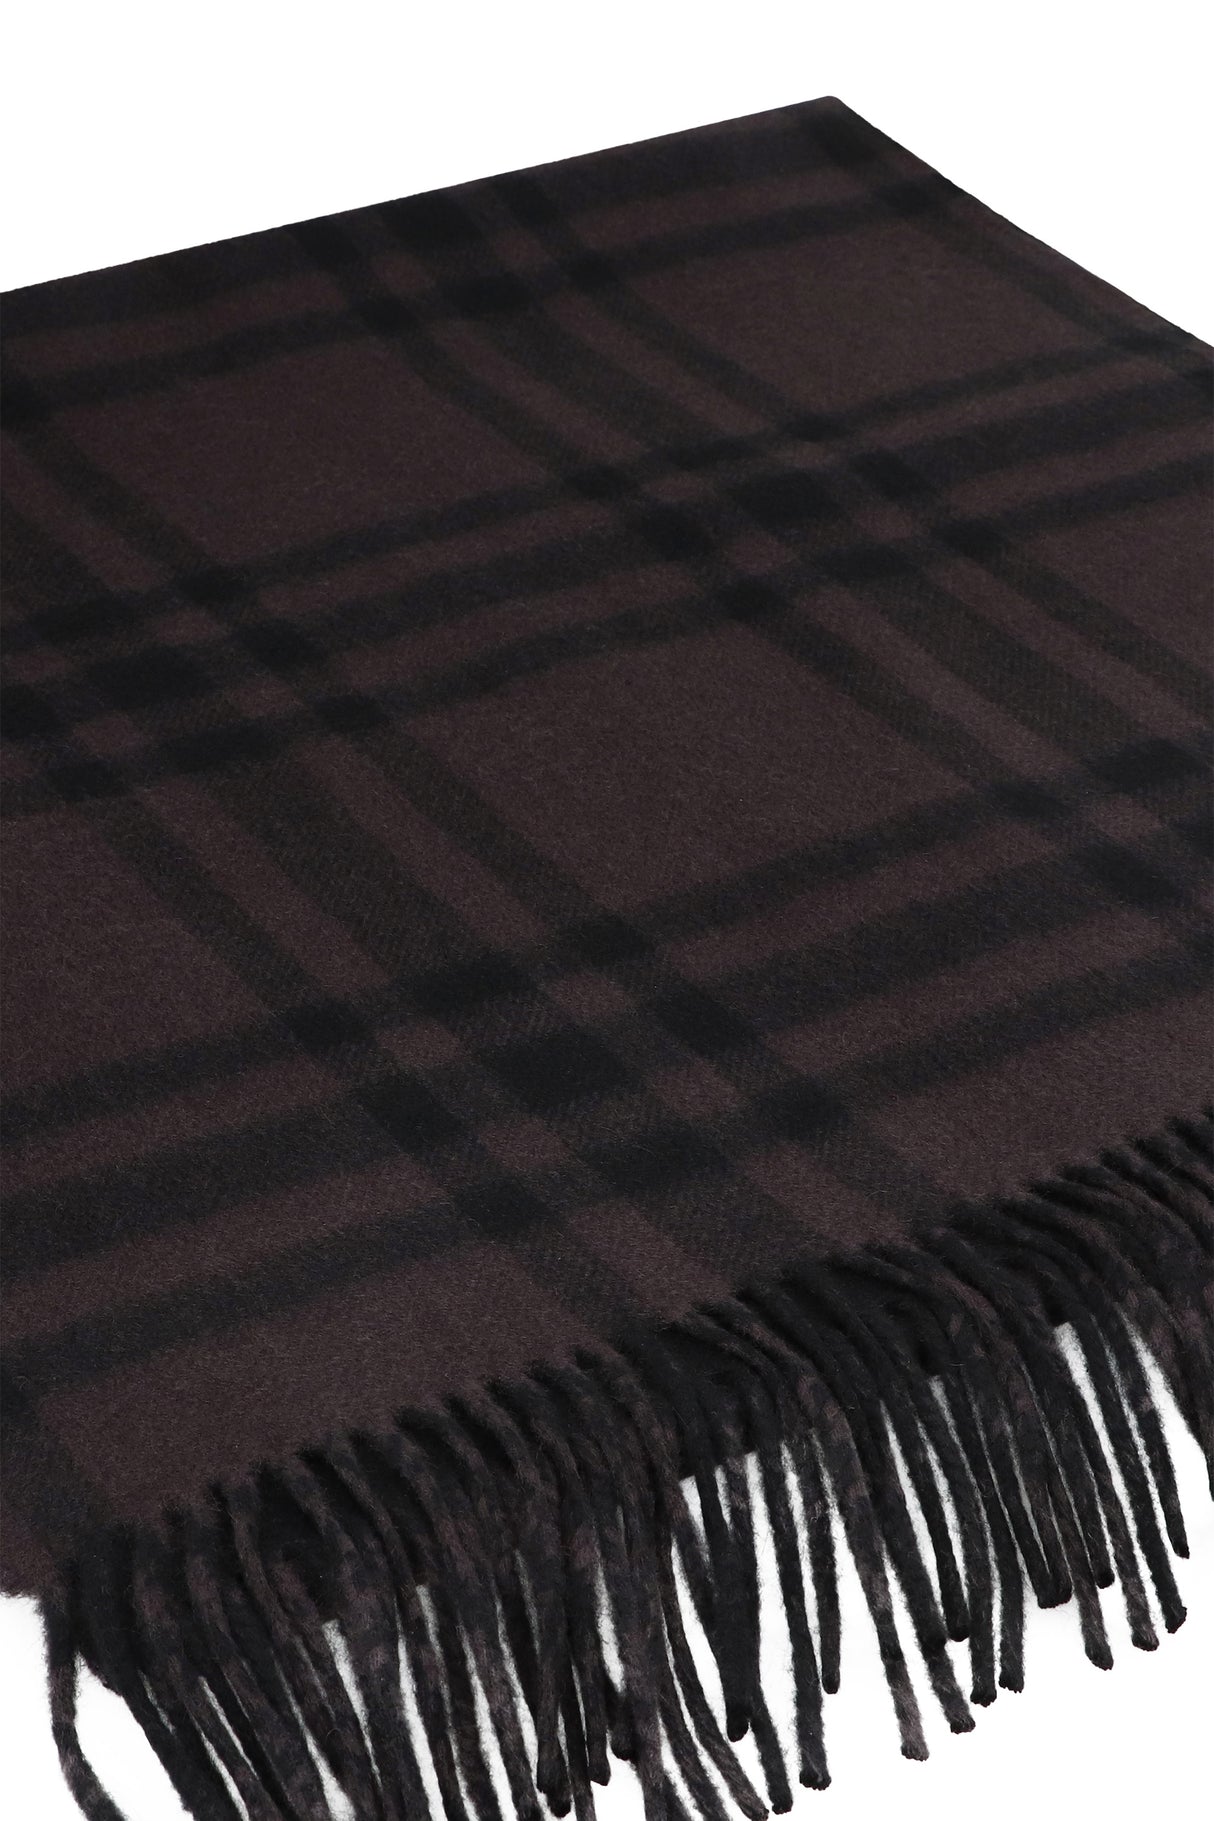 Khăn Cashmere Cao Cấp với Thiết Kế Checkered và Viền Tơ Tằm - Kích Thước: 210x50 cm